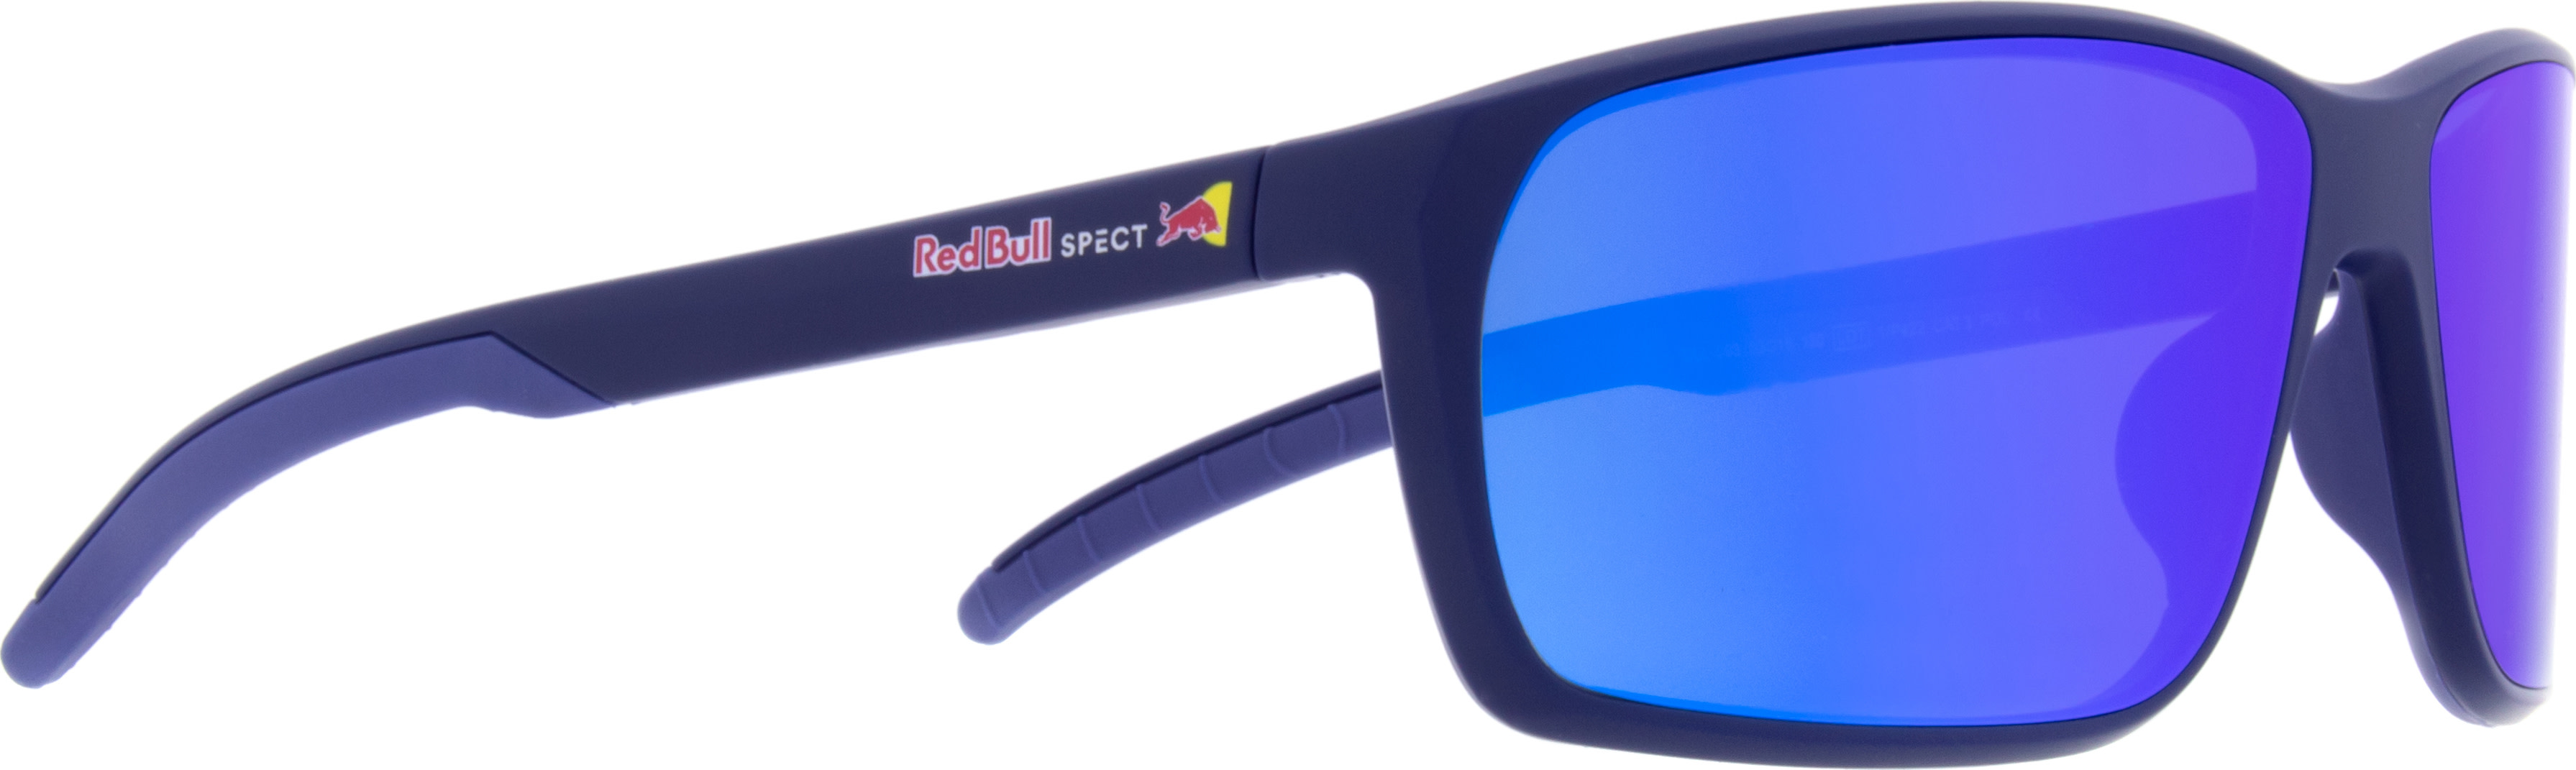 Red Bull Spect Till Blue